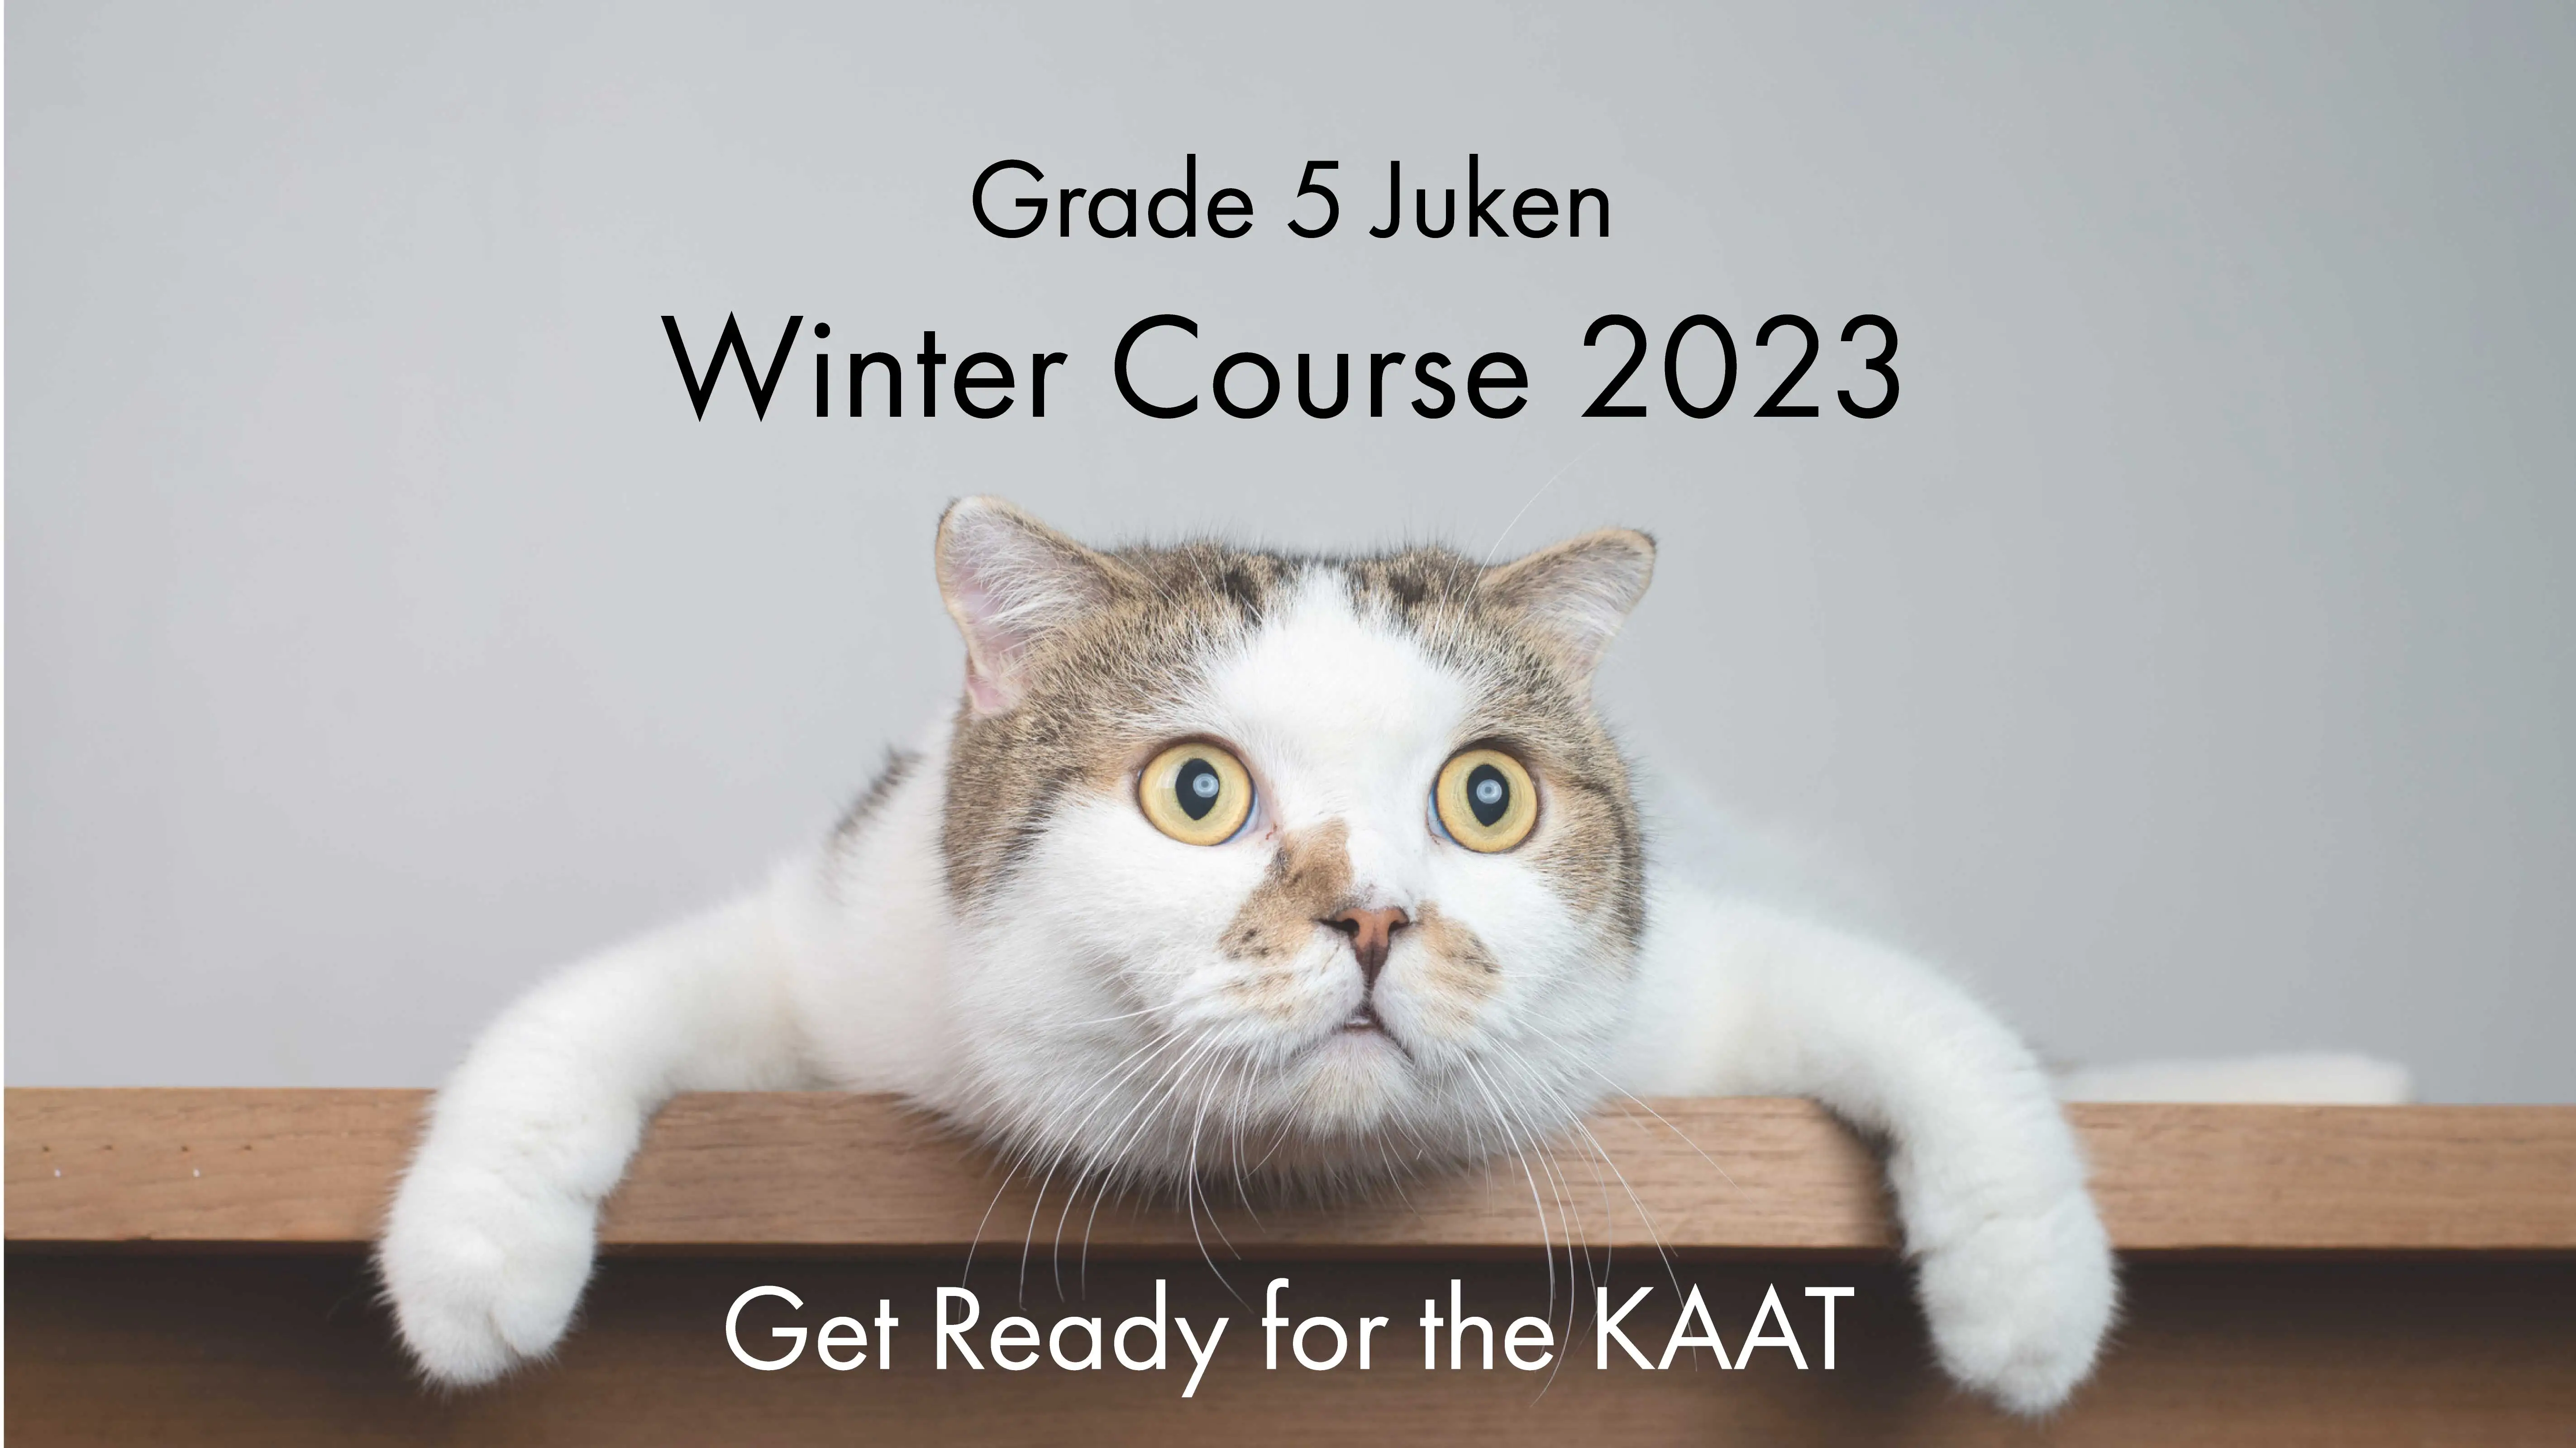 Grade 5 Juken: Winter Course 2023